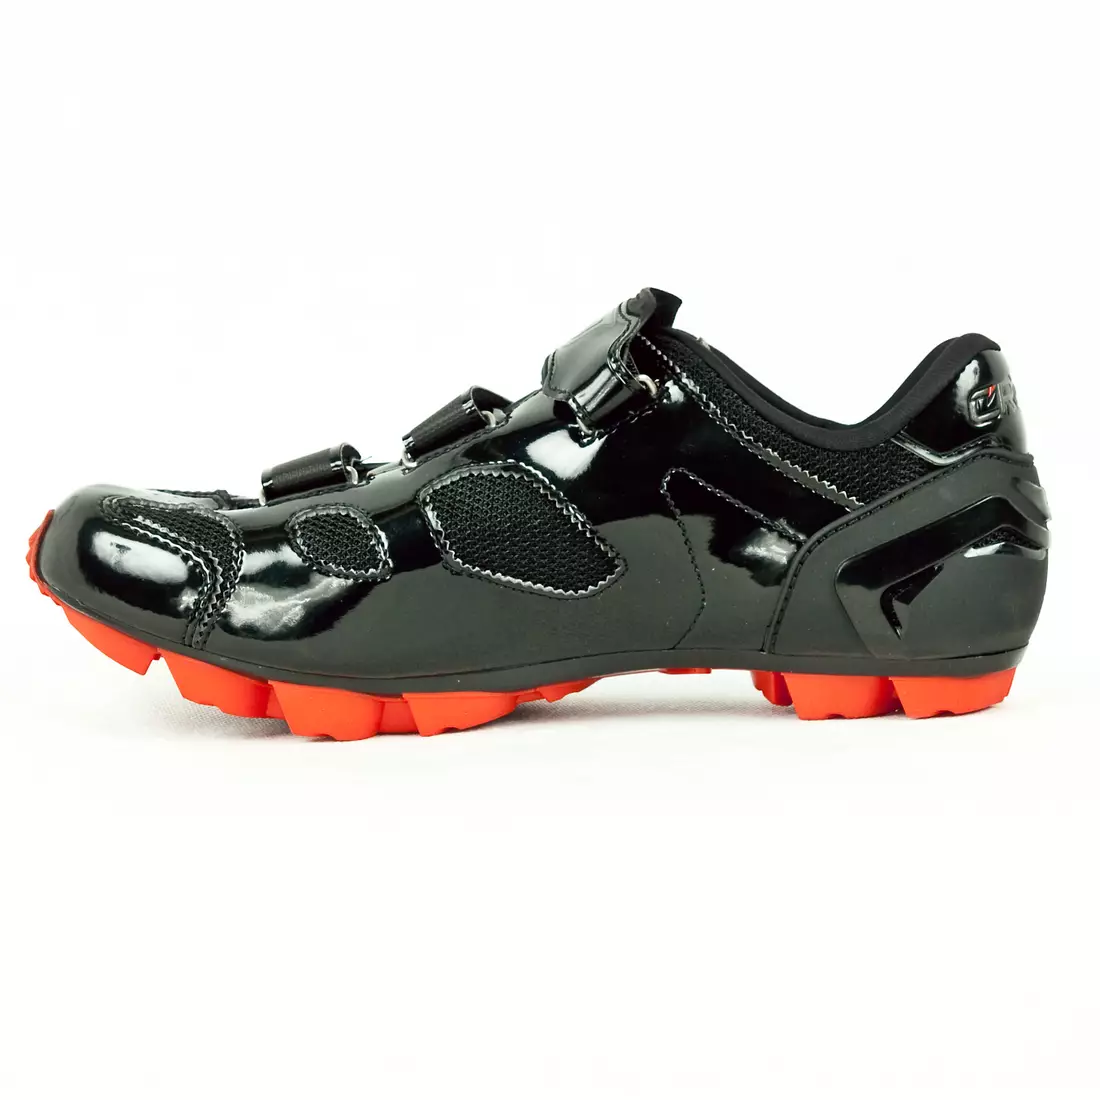 CRONO TRACK - MTB kerékpáros cipő - szín: Fekete